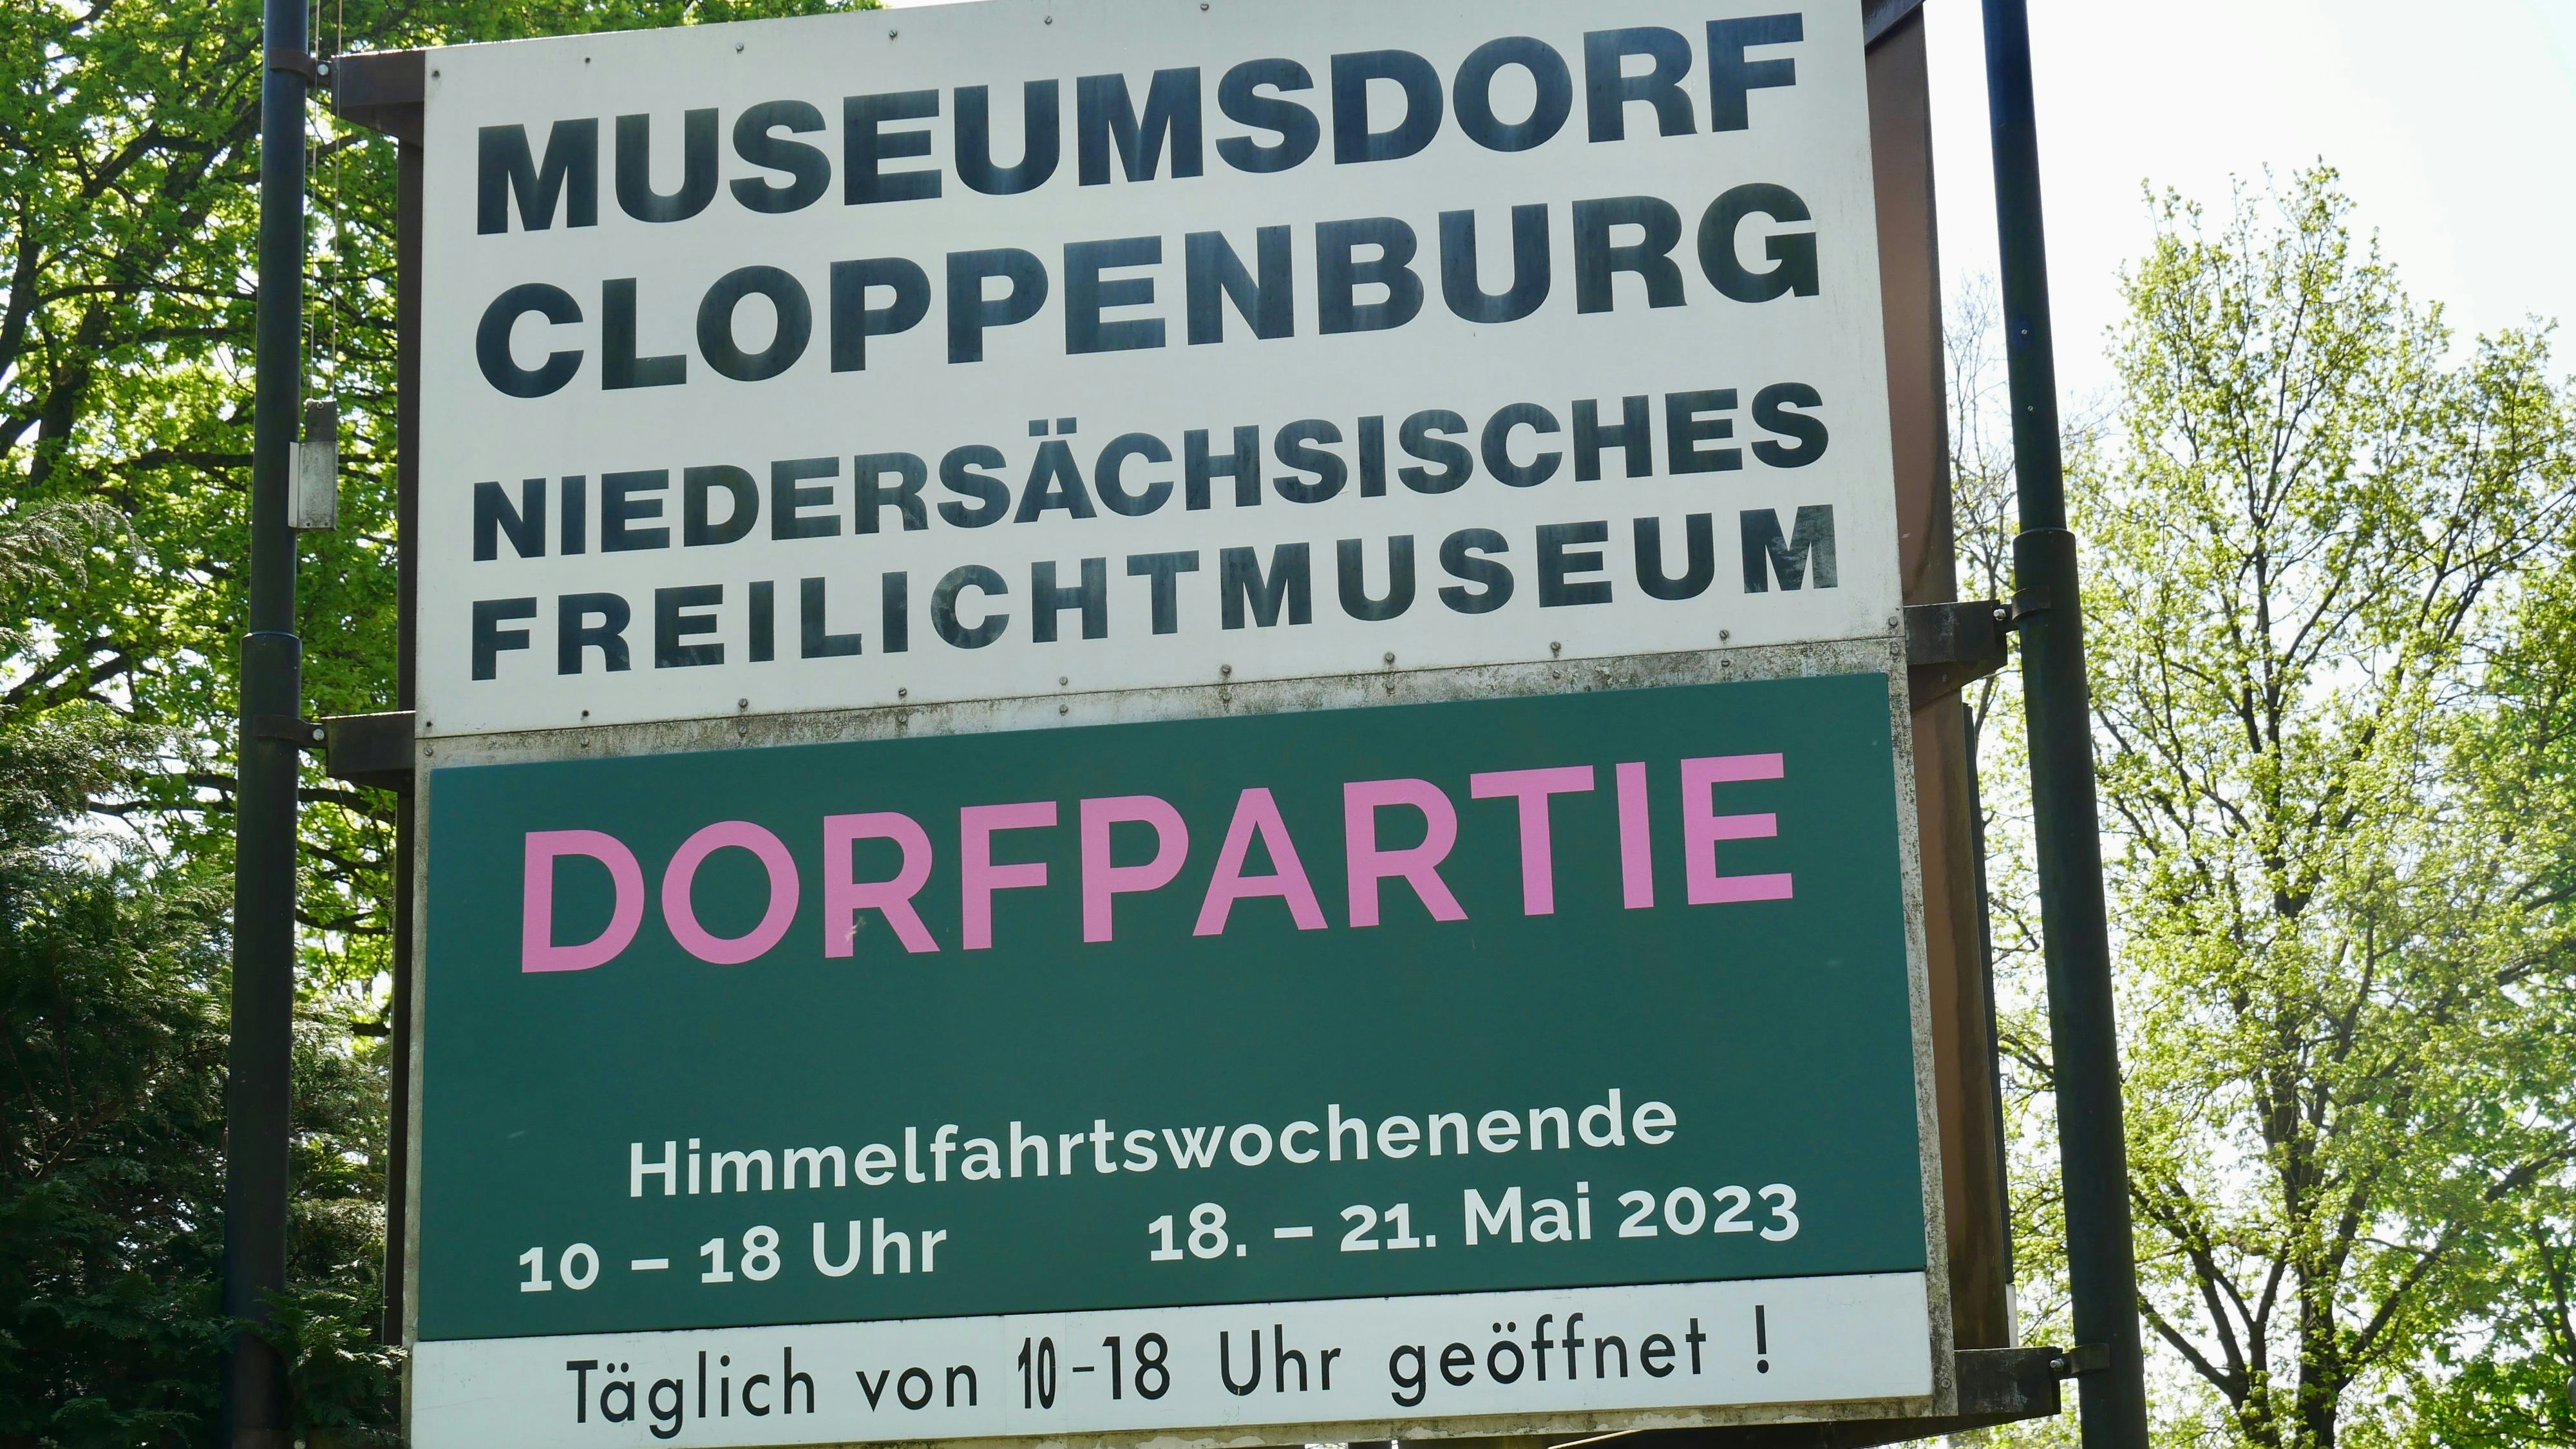 Schon ausgeschildert: Am Himmelfahrtswochenende zieht die Dorfpartie wieder Zehntausende ins Museumsdorf Cloppenburg. Foto: Dickerhoff